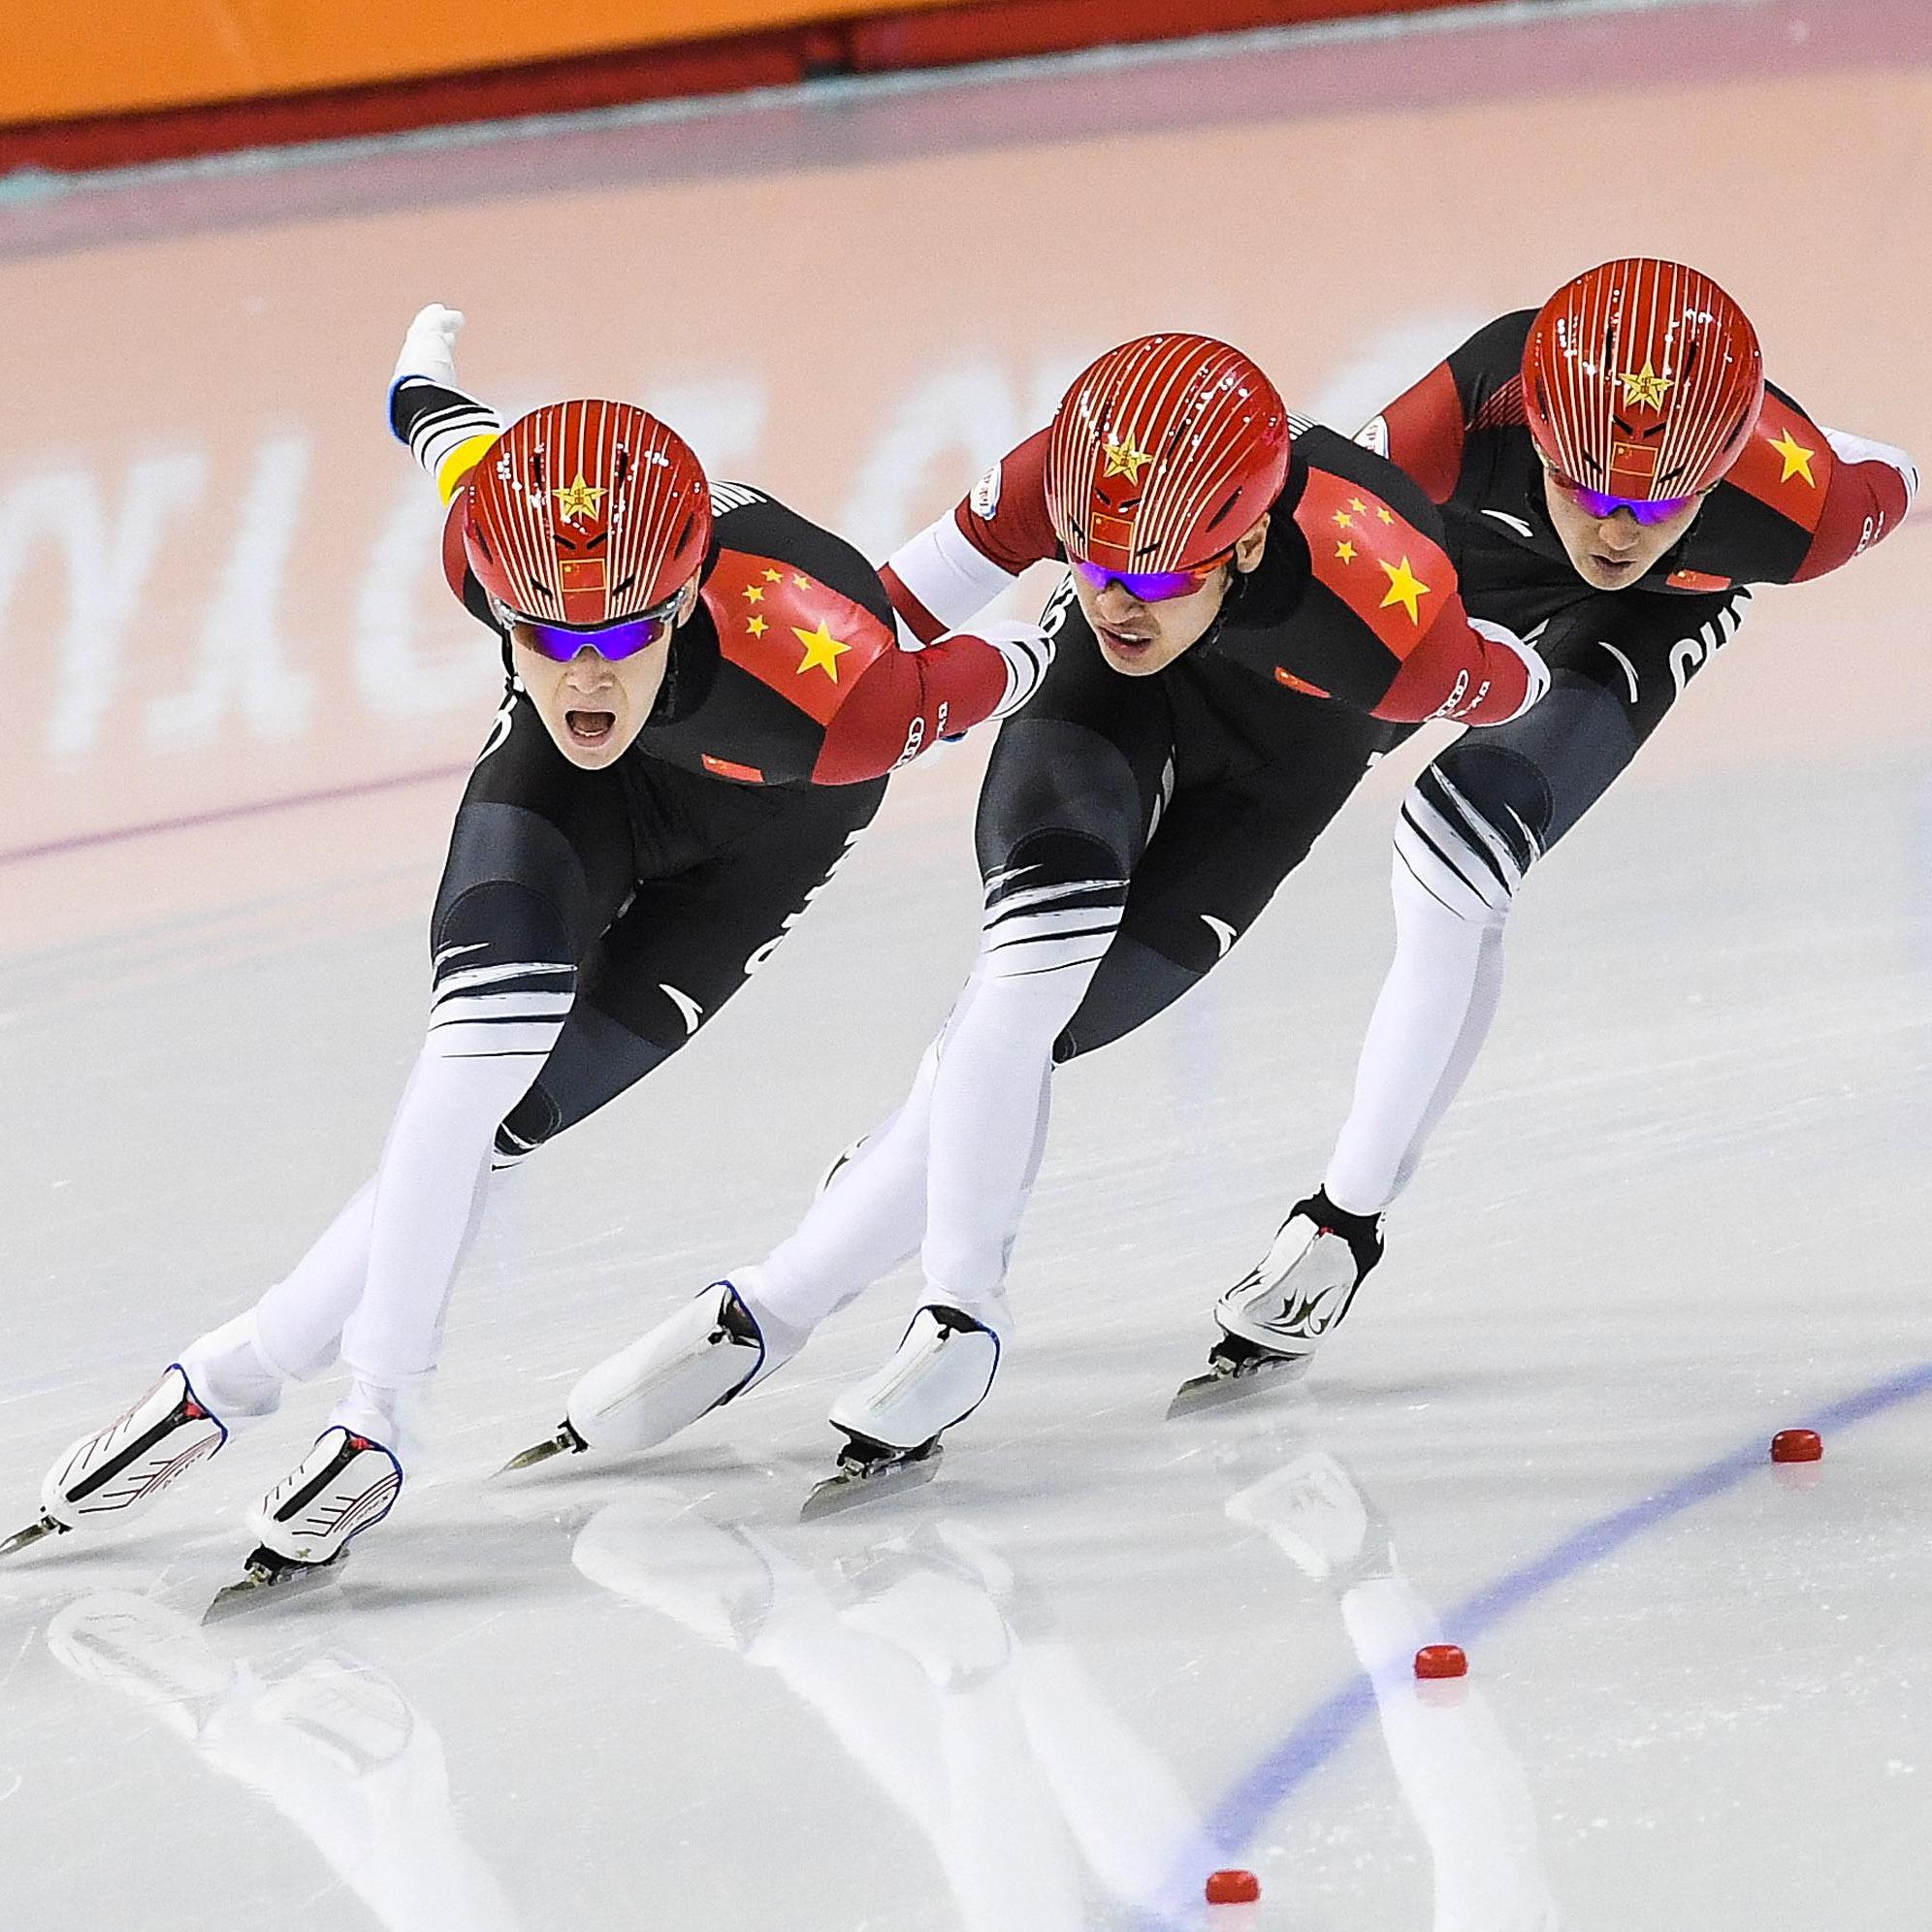 冬奥会速度滑冰中国图片